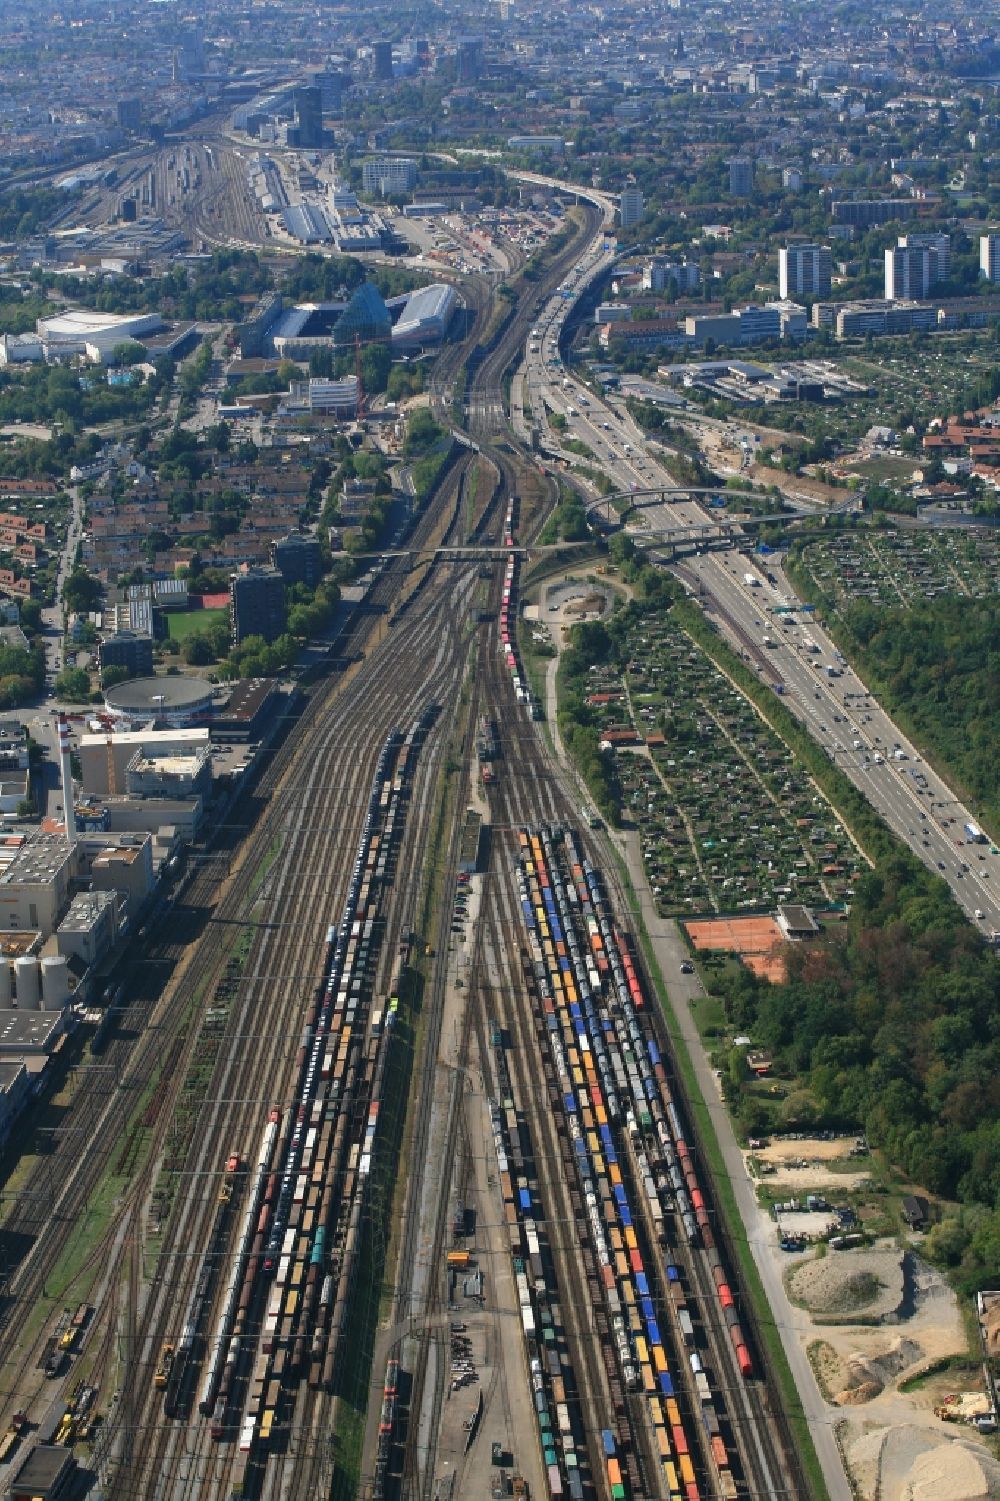 Muttenz von oben - Schienen und Gleise im Streckennetz der Schweizer Bahn beim Rangierbahnhof in Muttenz im Kanton Basel-Landschaft, Schweiz